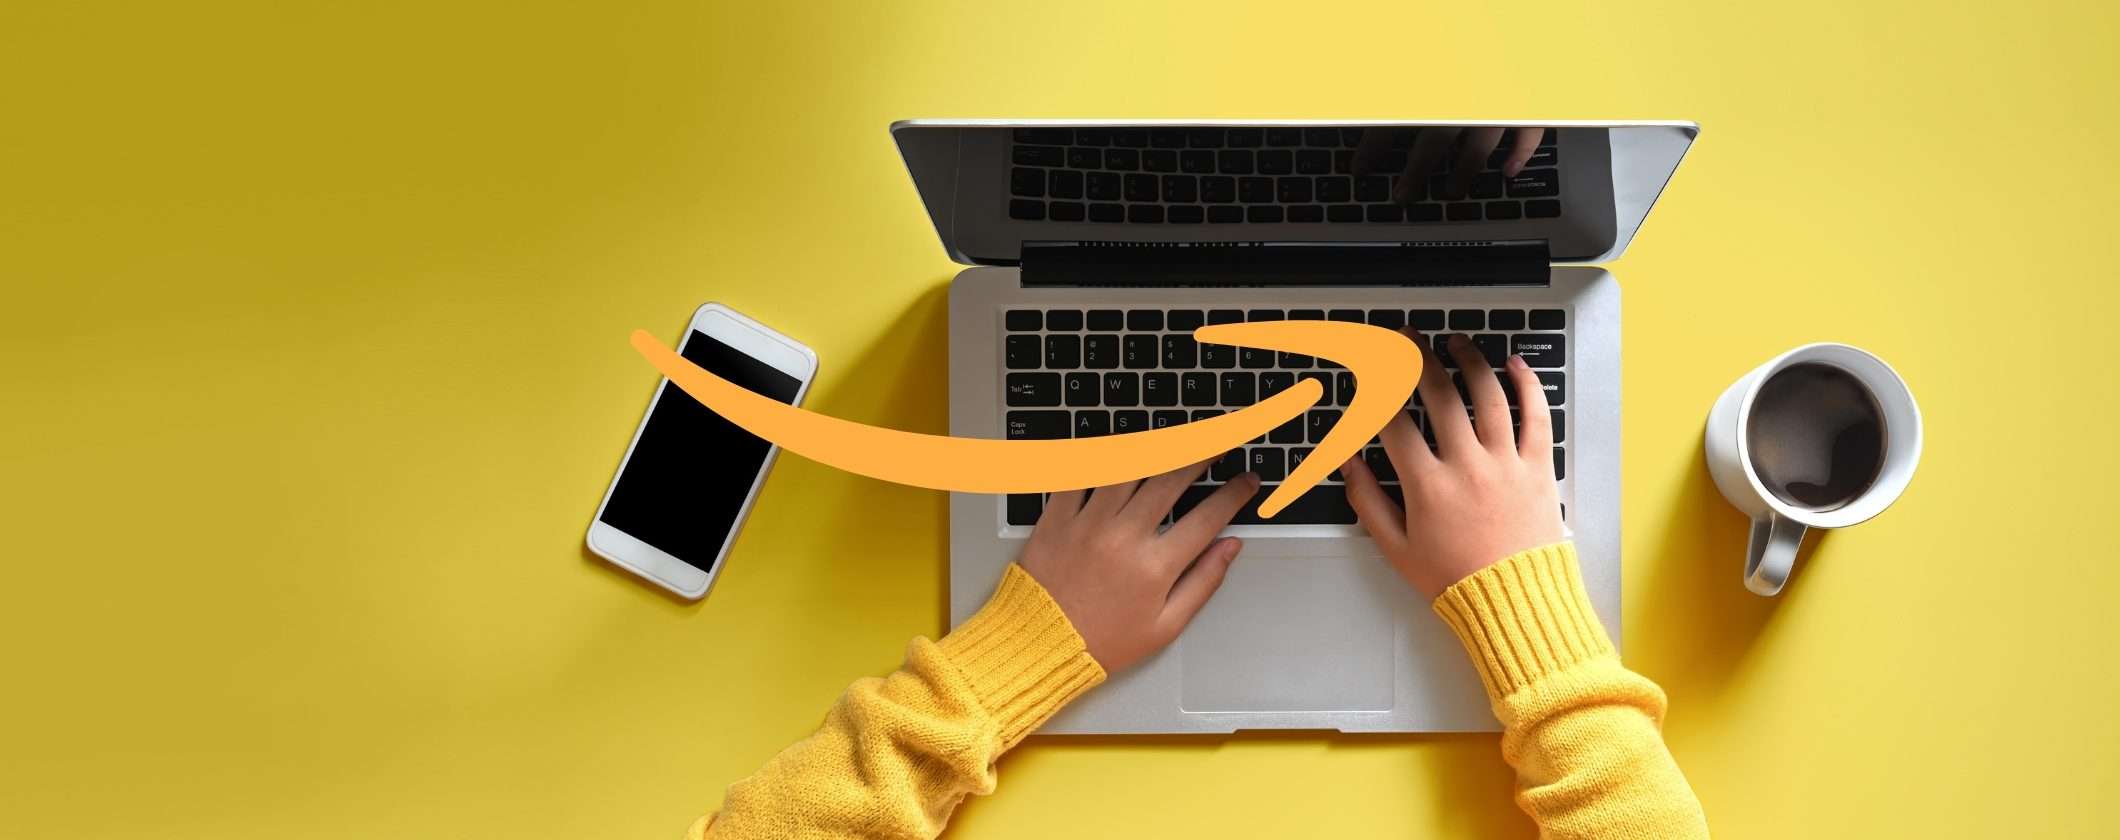 Amazon: scopri le migliori offerte per la sicurezza dei tuoi dispositivi